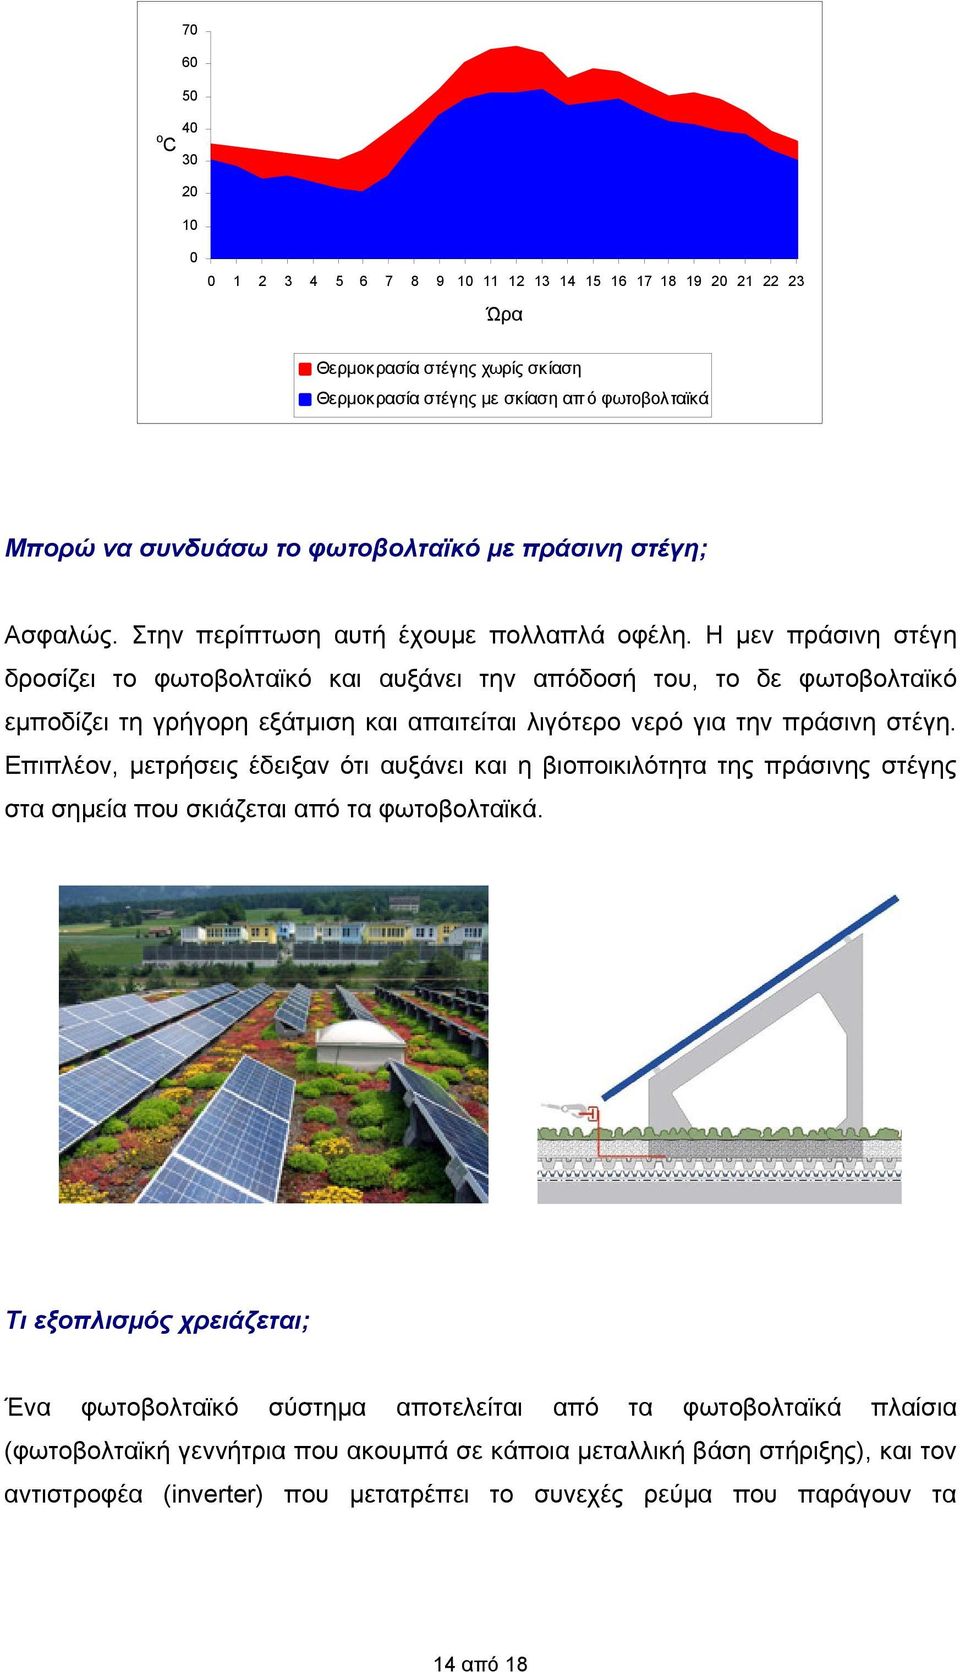 Η μεν πράσινη στέγη δροσίζει το φωτοβολταϊκό και αυξάνει την απόδοσή του, το δε φωτοβολταϊκό εμποδίζει τη γρήγορη εξάτμιση και απαιτείται λιγότερο νερό για την πράσινη στέγη.